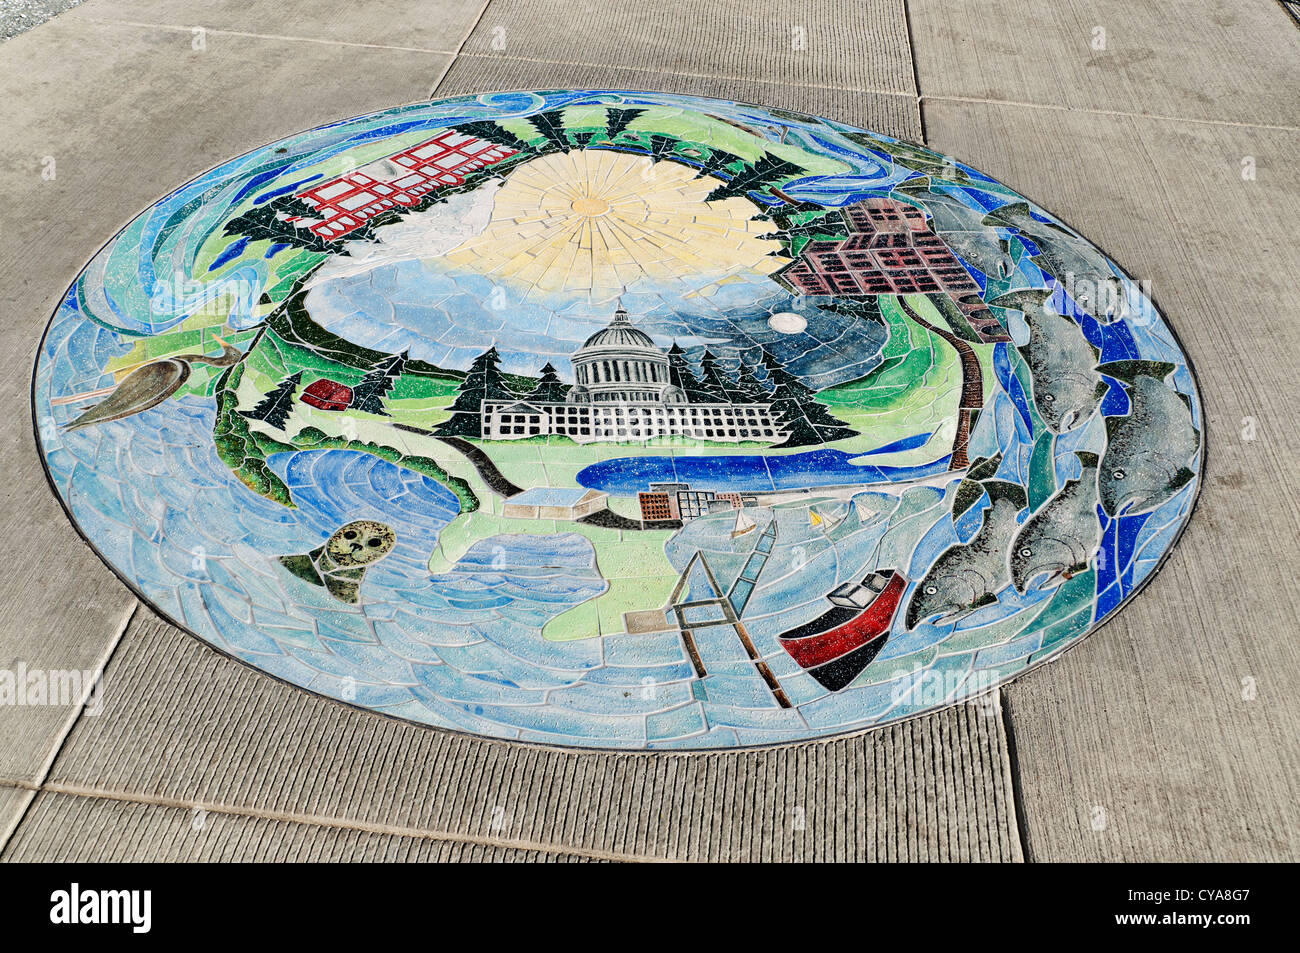 Eine kreisförmige Wasser unter dem Motto Mosaik auf dem Boden an der East Bay öffentlichen Plaza ist ein Beispiel für diesen Park einzigartigen Kunstwerken. Stockfoto